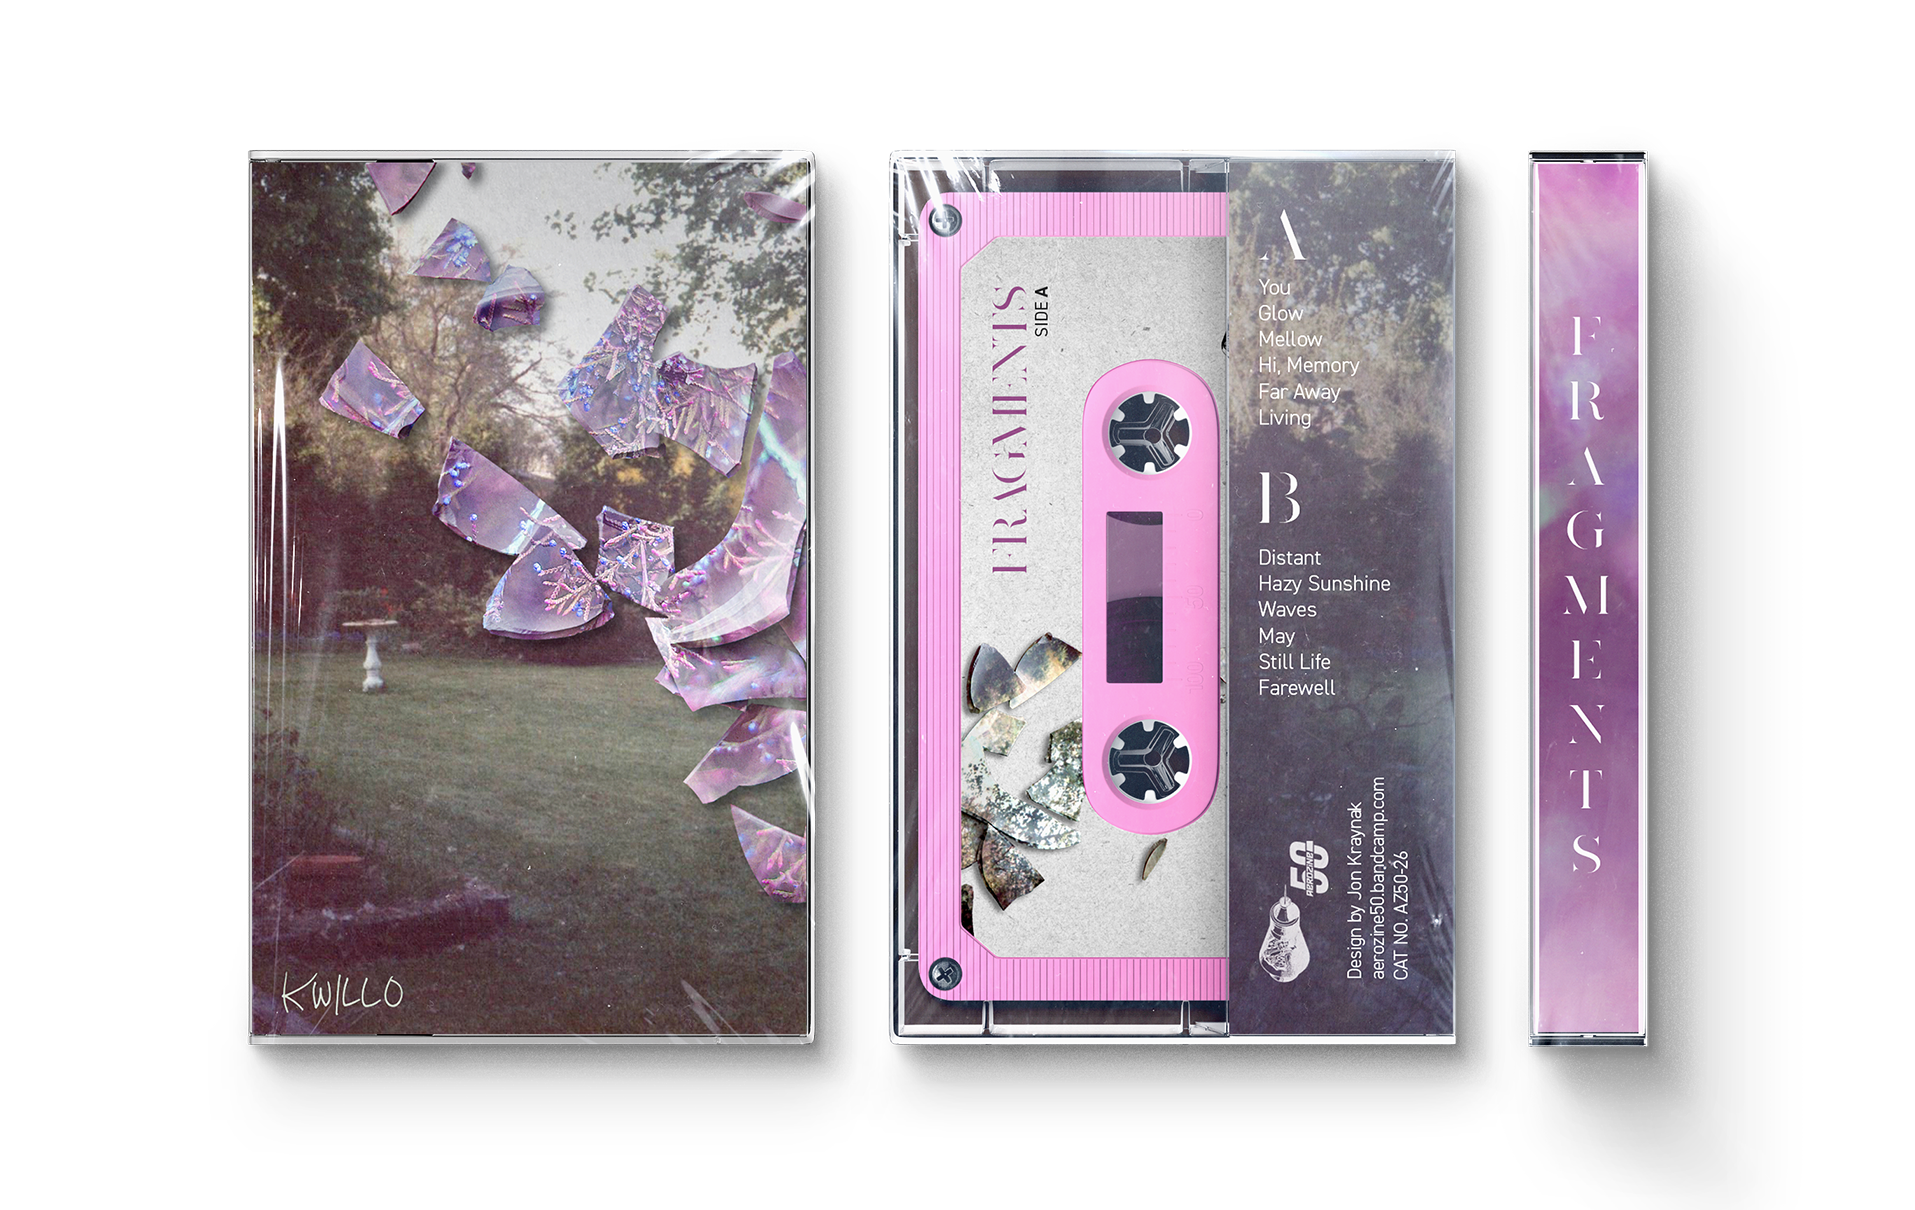  Cassette design for Kwillo’s Fragments.  